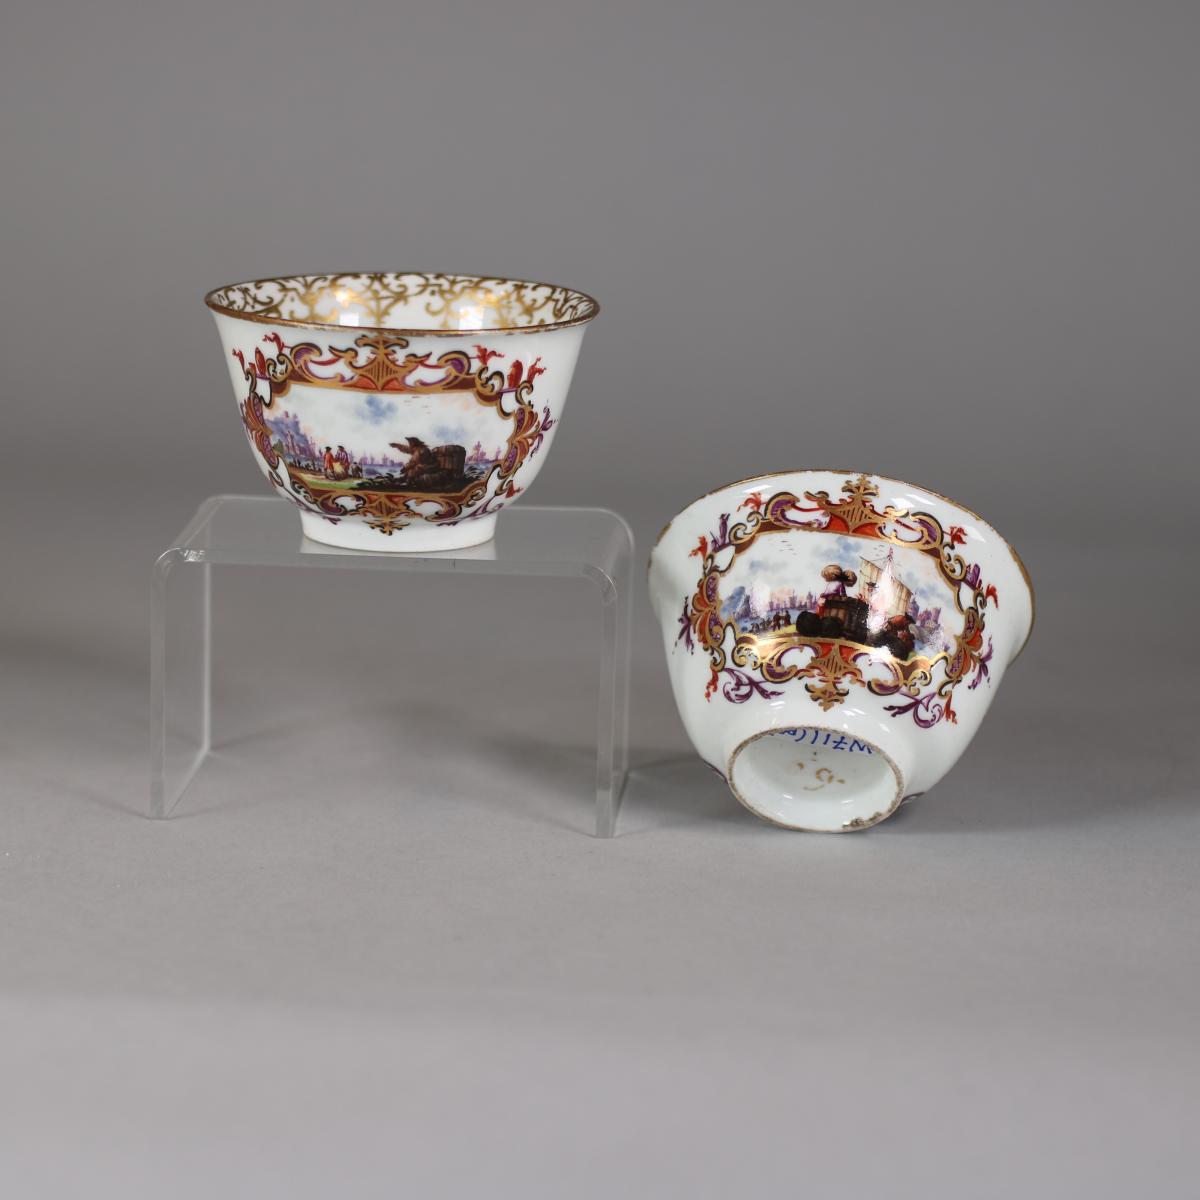 Alternative shot of Meiseen eighteenth century teabowls